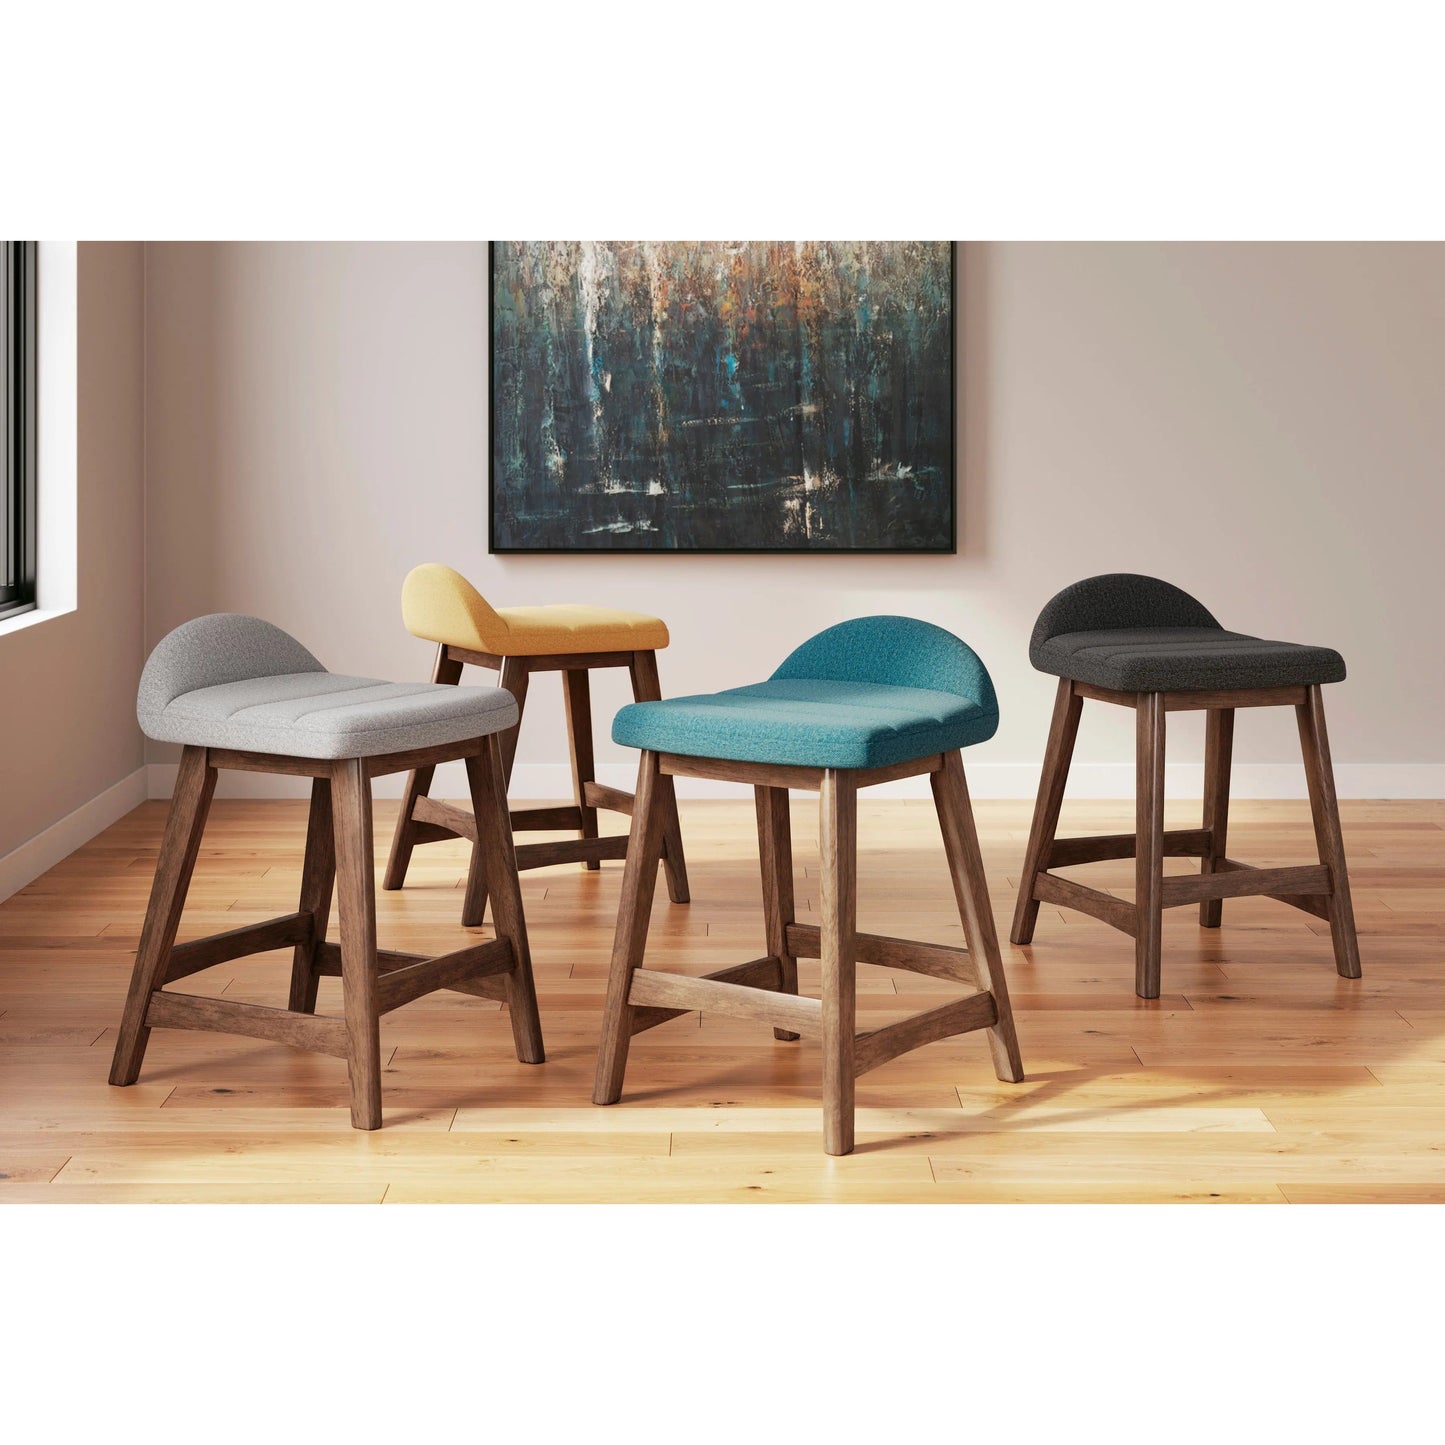 Lyncott - Upholstered Barstool DINING ETC